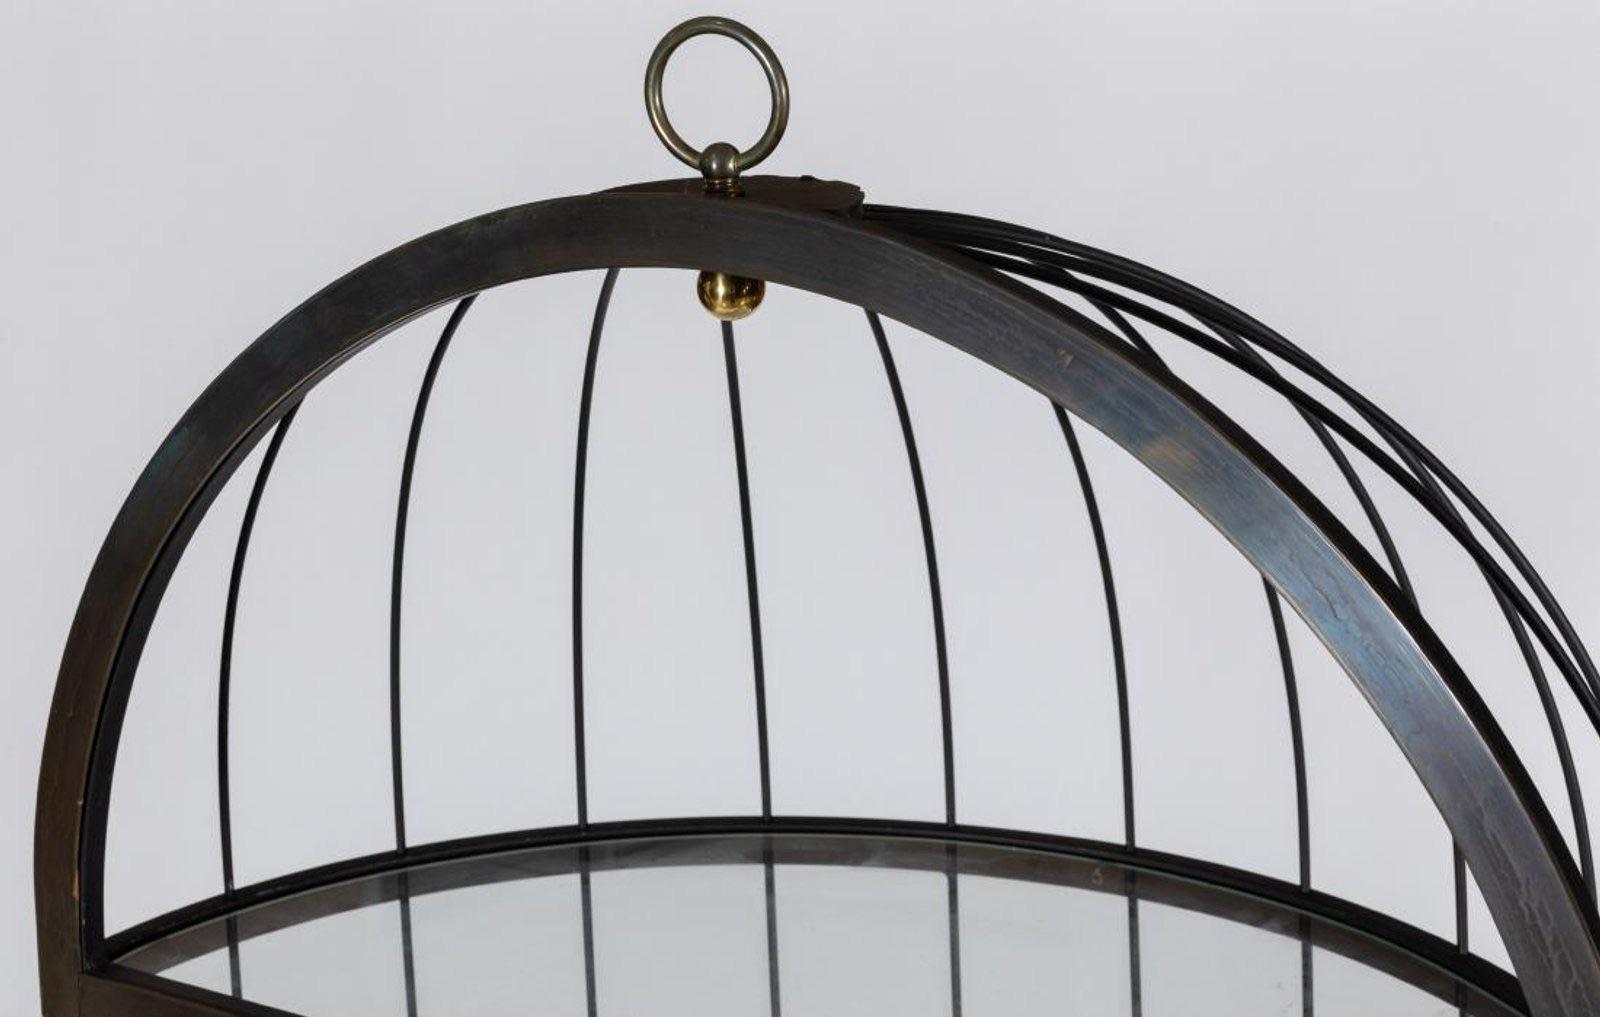 French Mid-century Birdcage Étagère Hanging Shelf, Messing, Stahl.   Kann von der Decke hängen oder auf dem Boden liegen.  Wunderschönes, gehaltvolles Stück.  
Maße: 28 